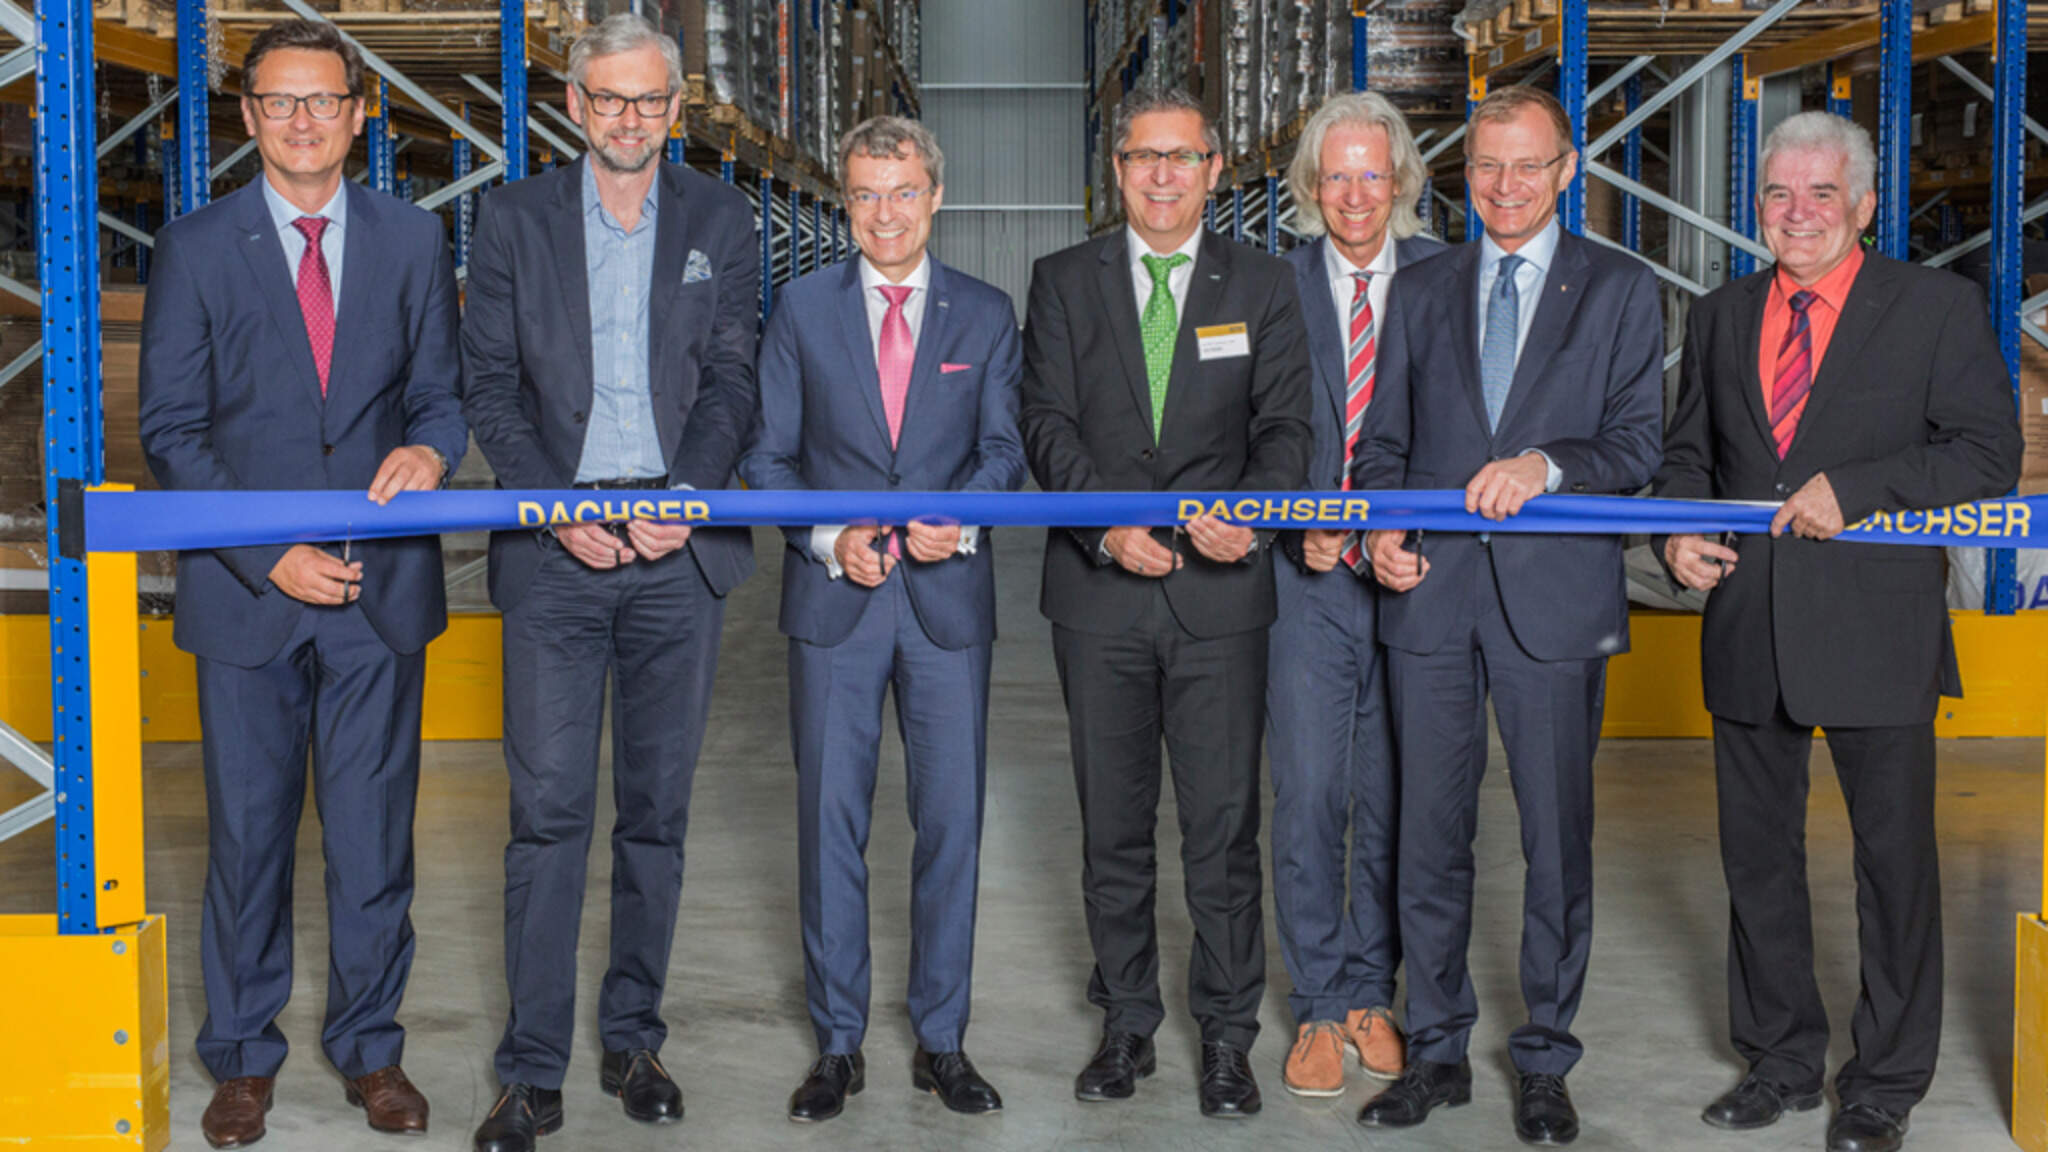 Feierliche Eröffnung des neuen Warehouses in Hörsching - Bildunterschrift siehe Ende Text.